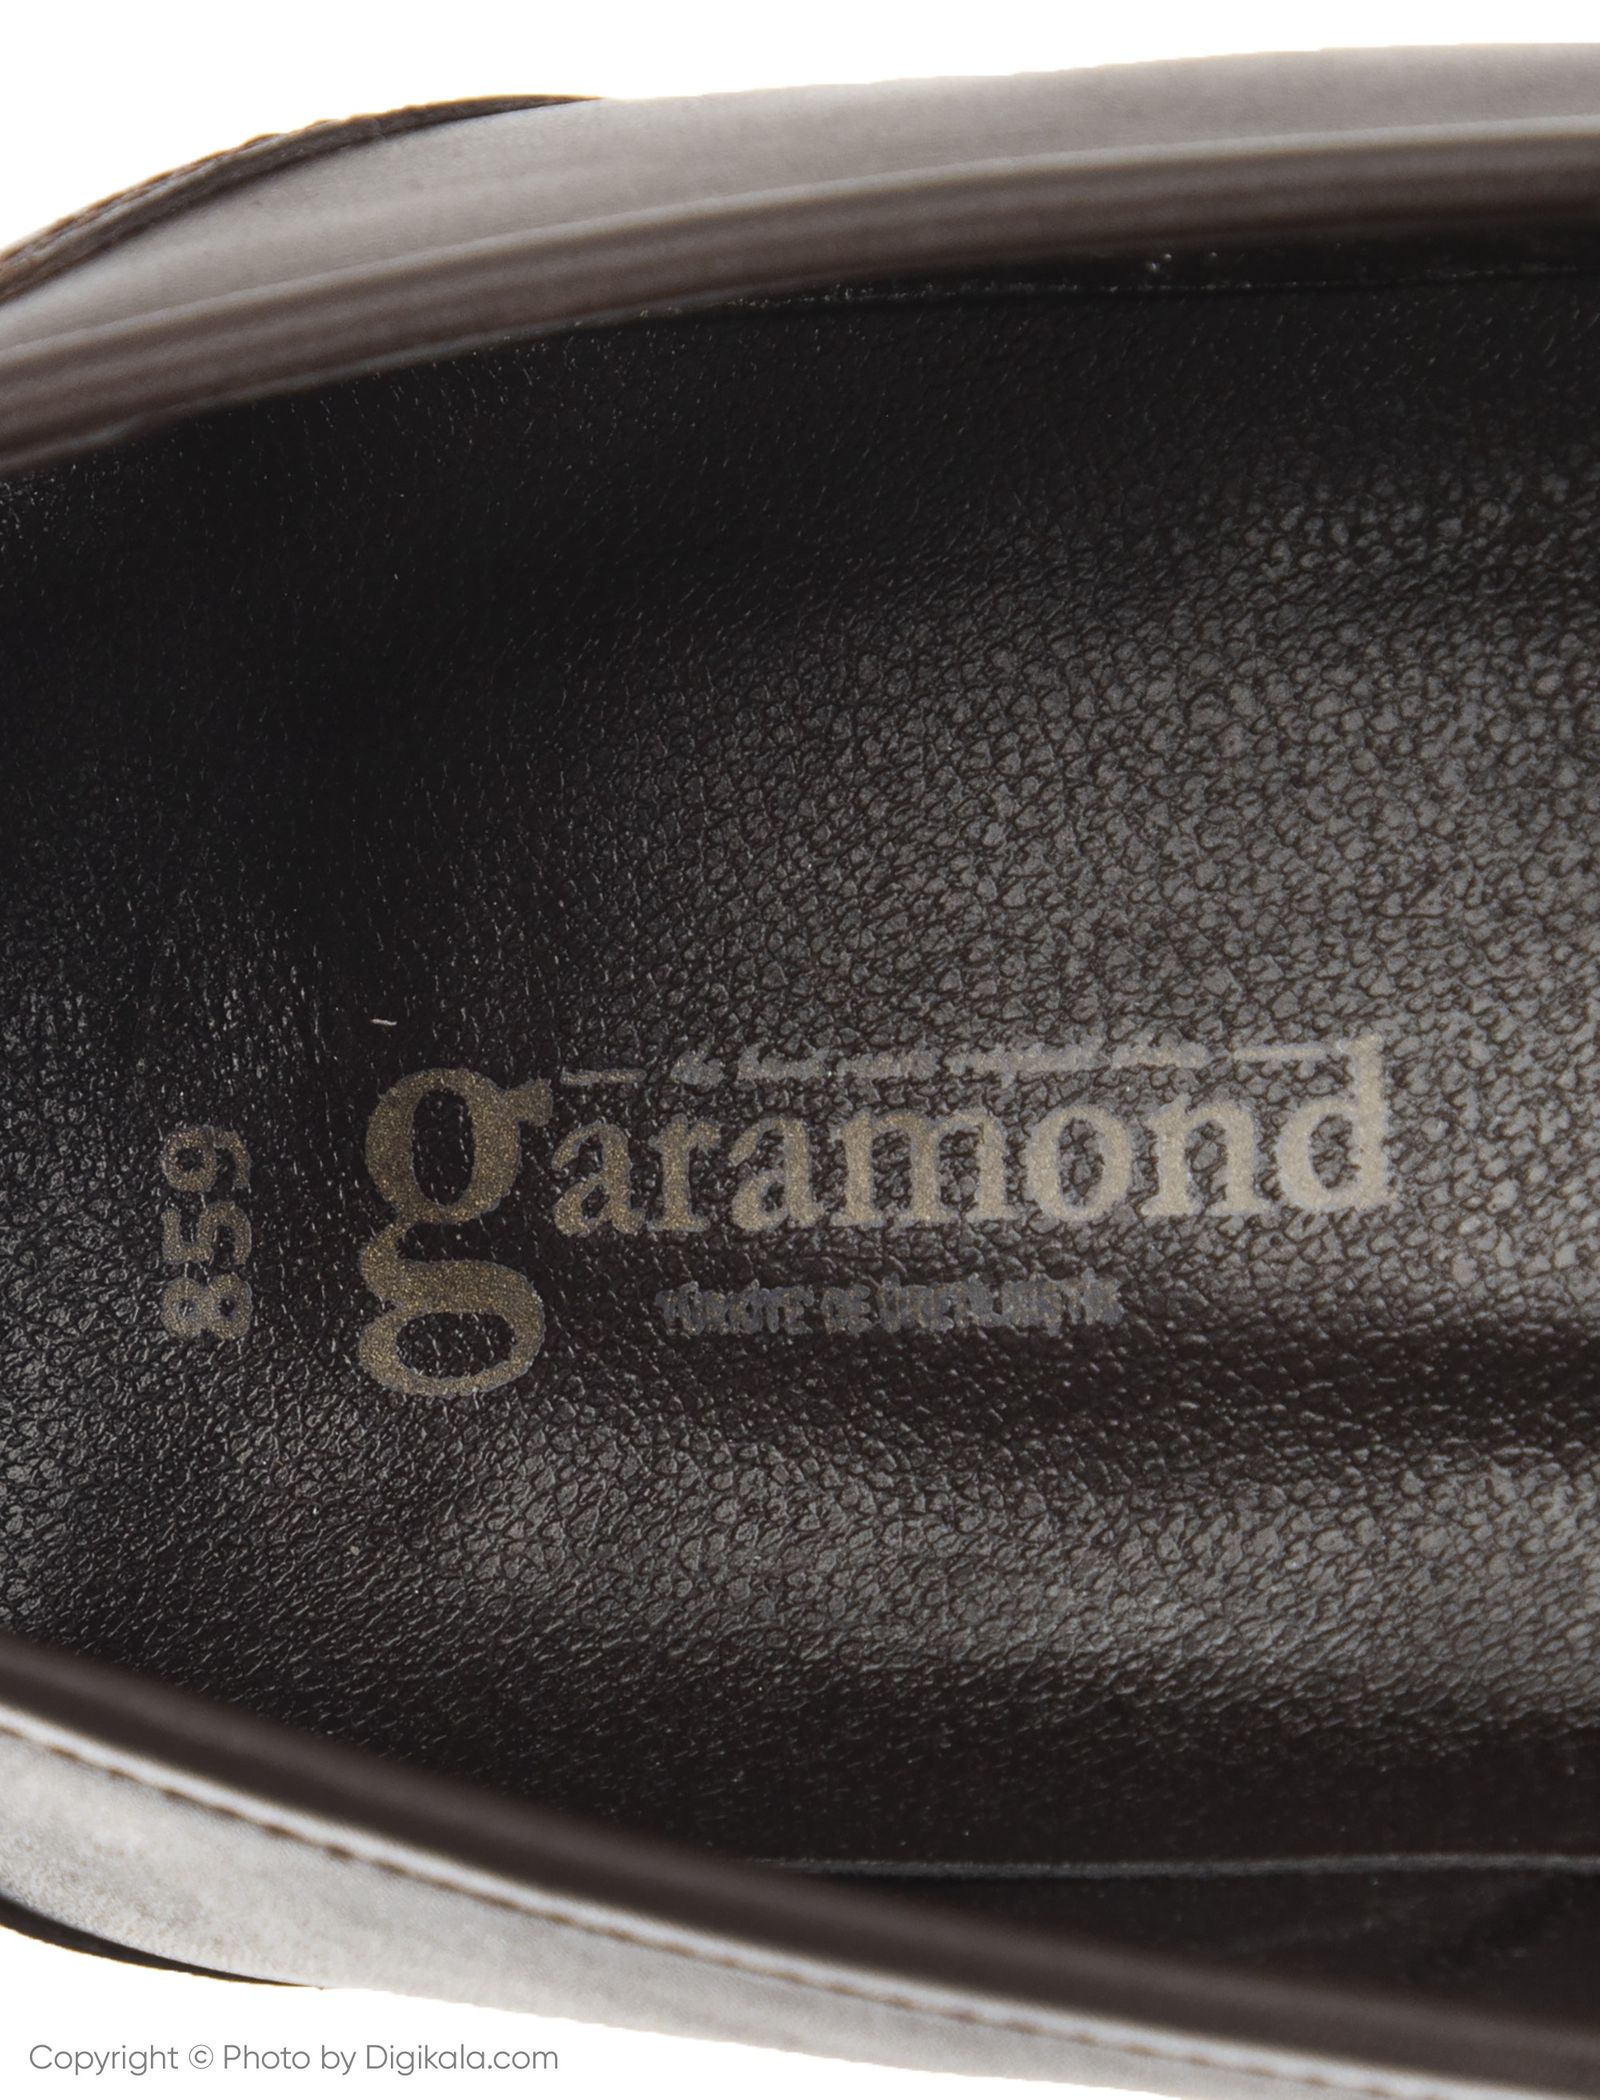 کفش مردانه گاراموند مدل 100255604-103 - قهوه ای - 7